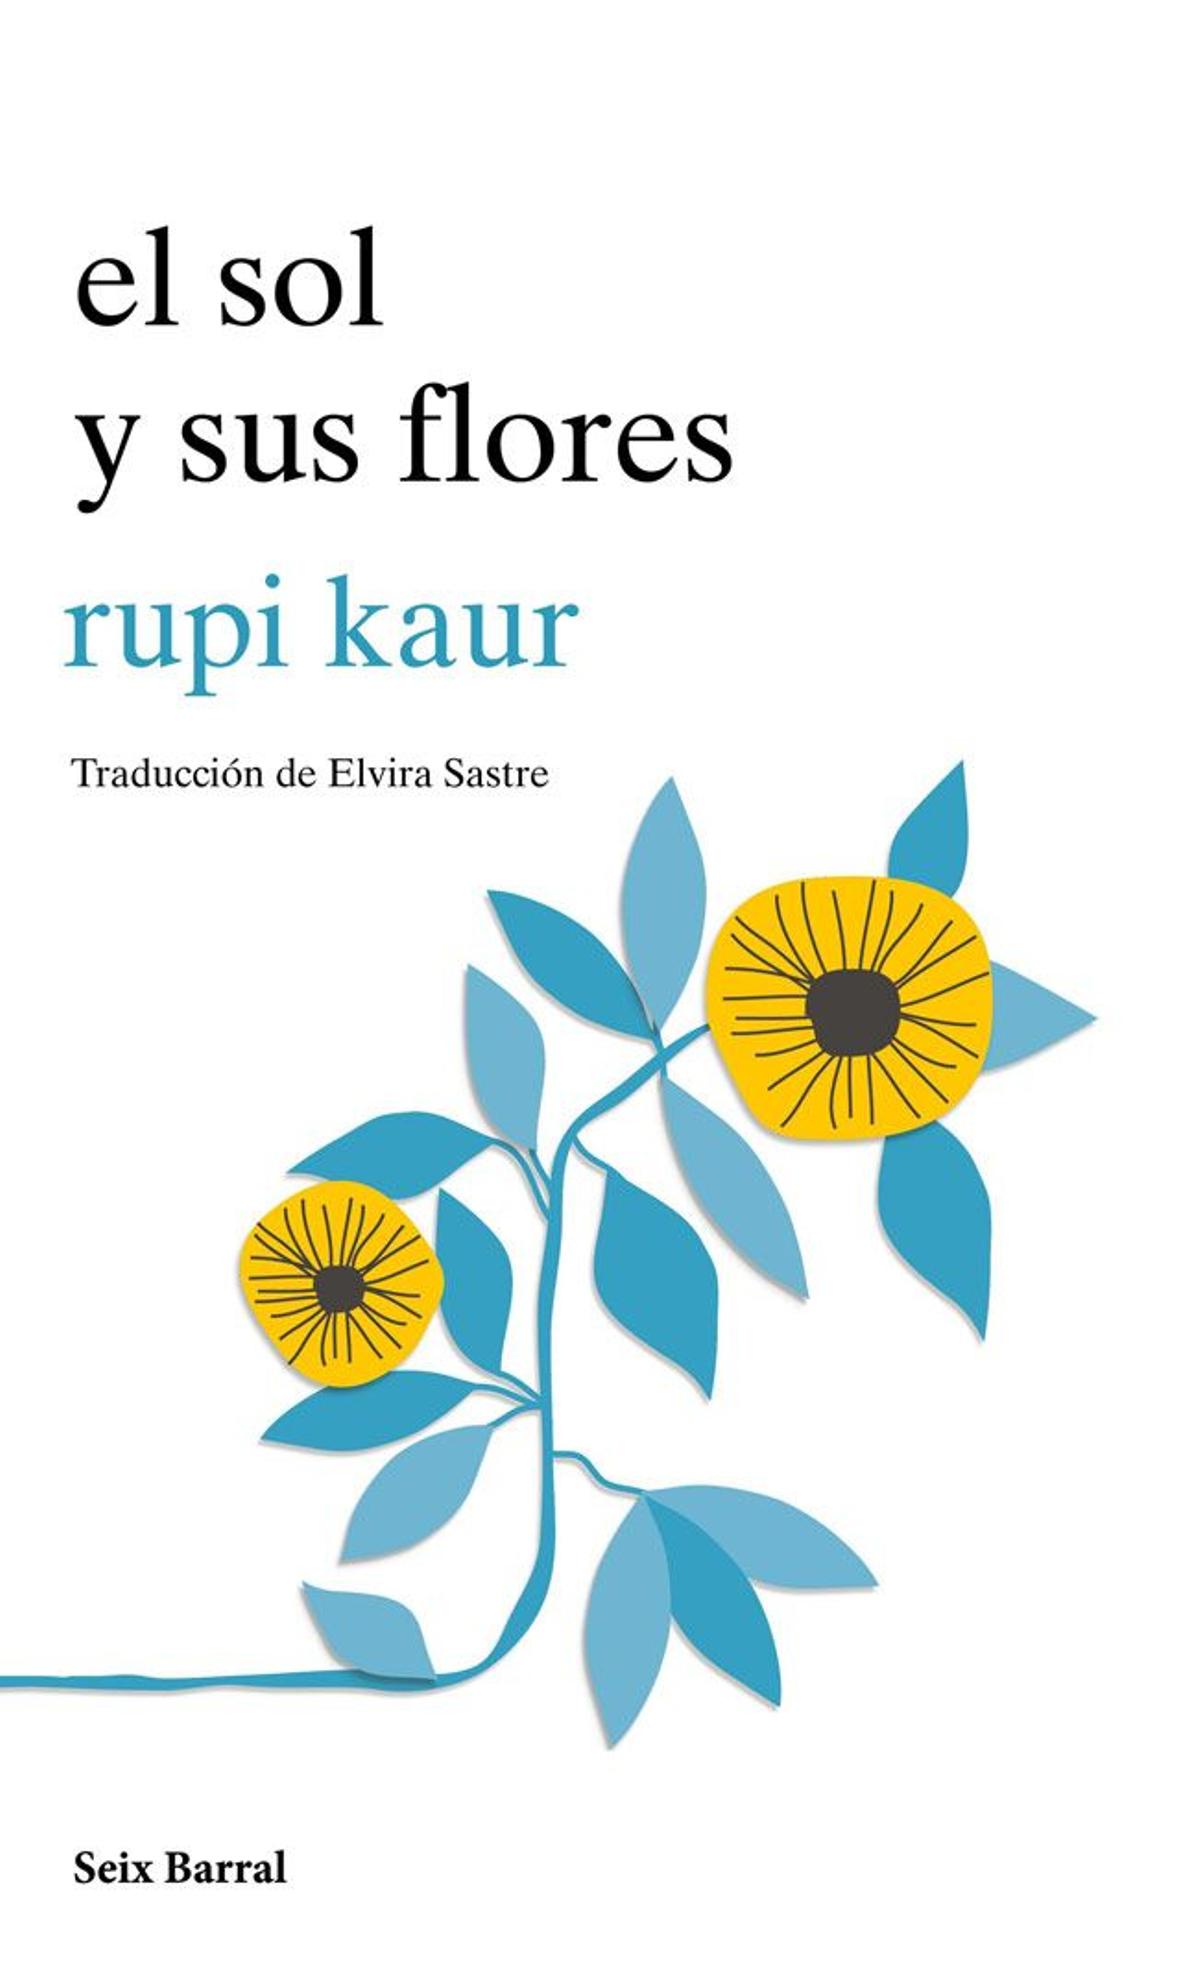 'EL sol sus flores' de Rupi Kaur